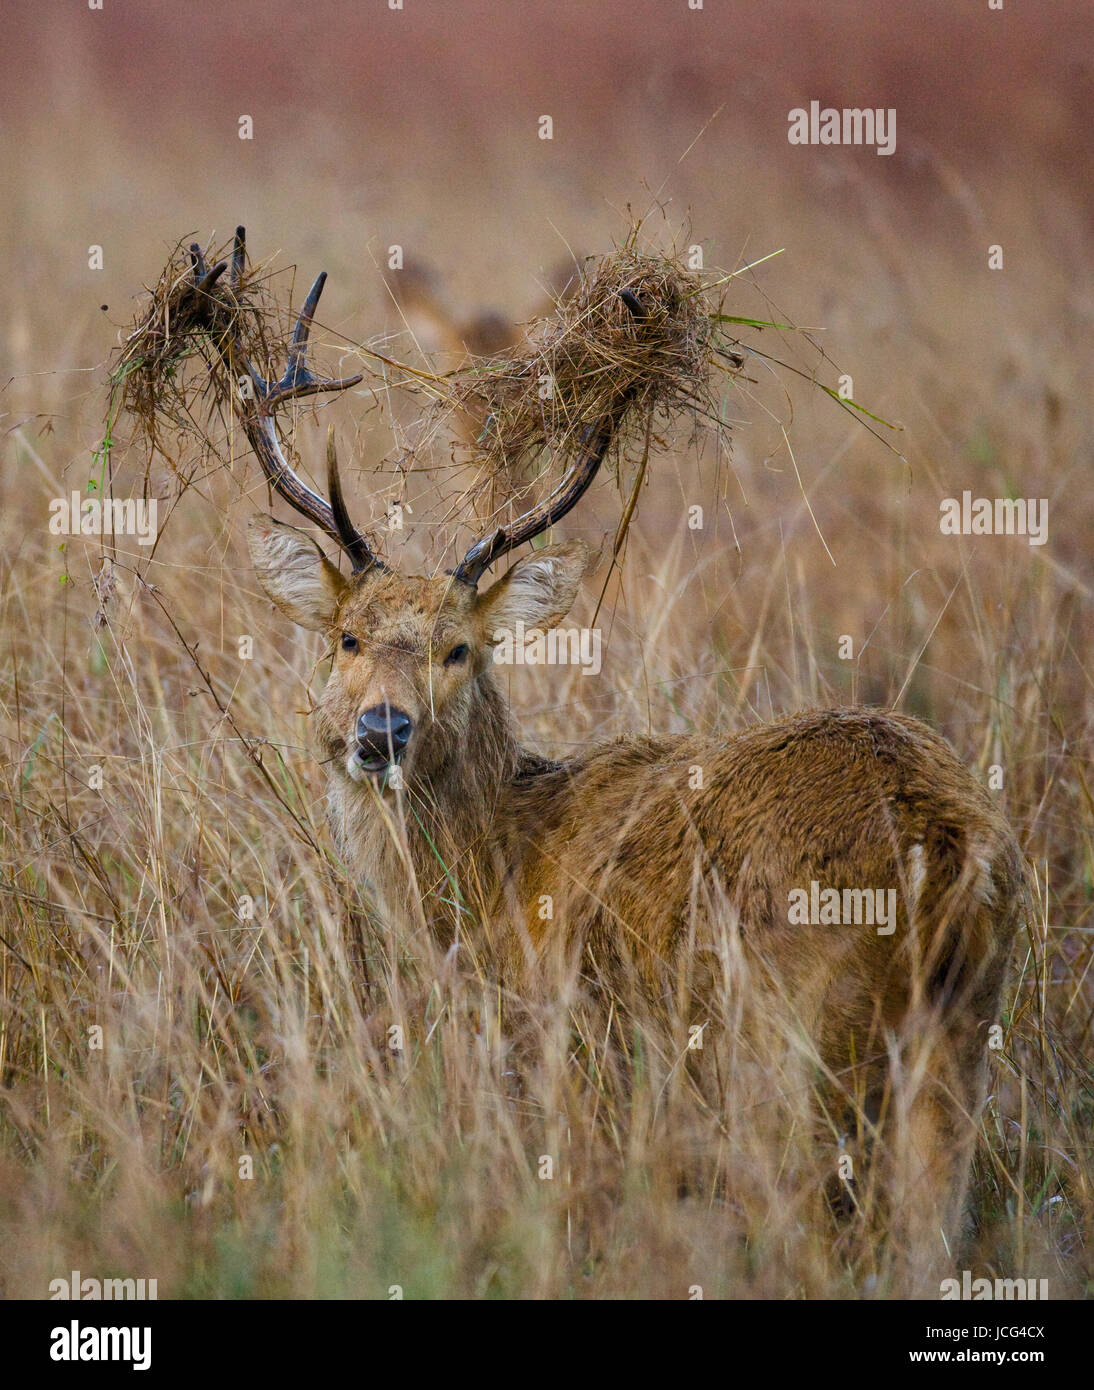 Cerf avec de belles cornes debout dans l'herbe dans la nature. Inde. Parc national. Banque D'Images